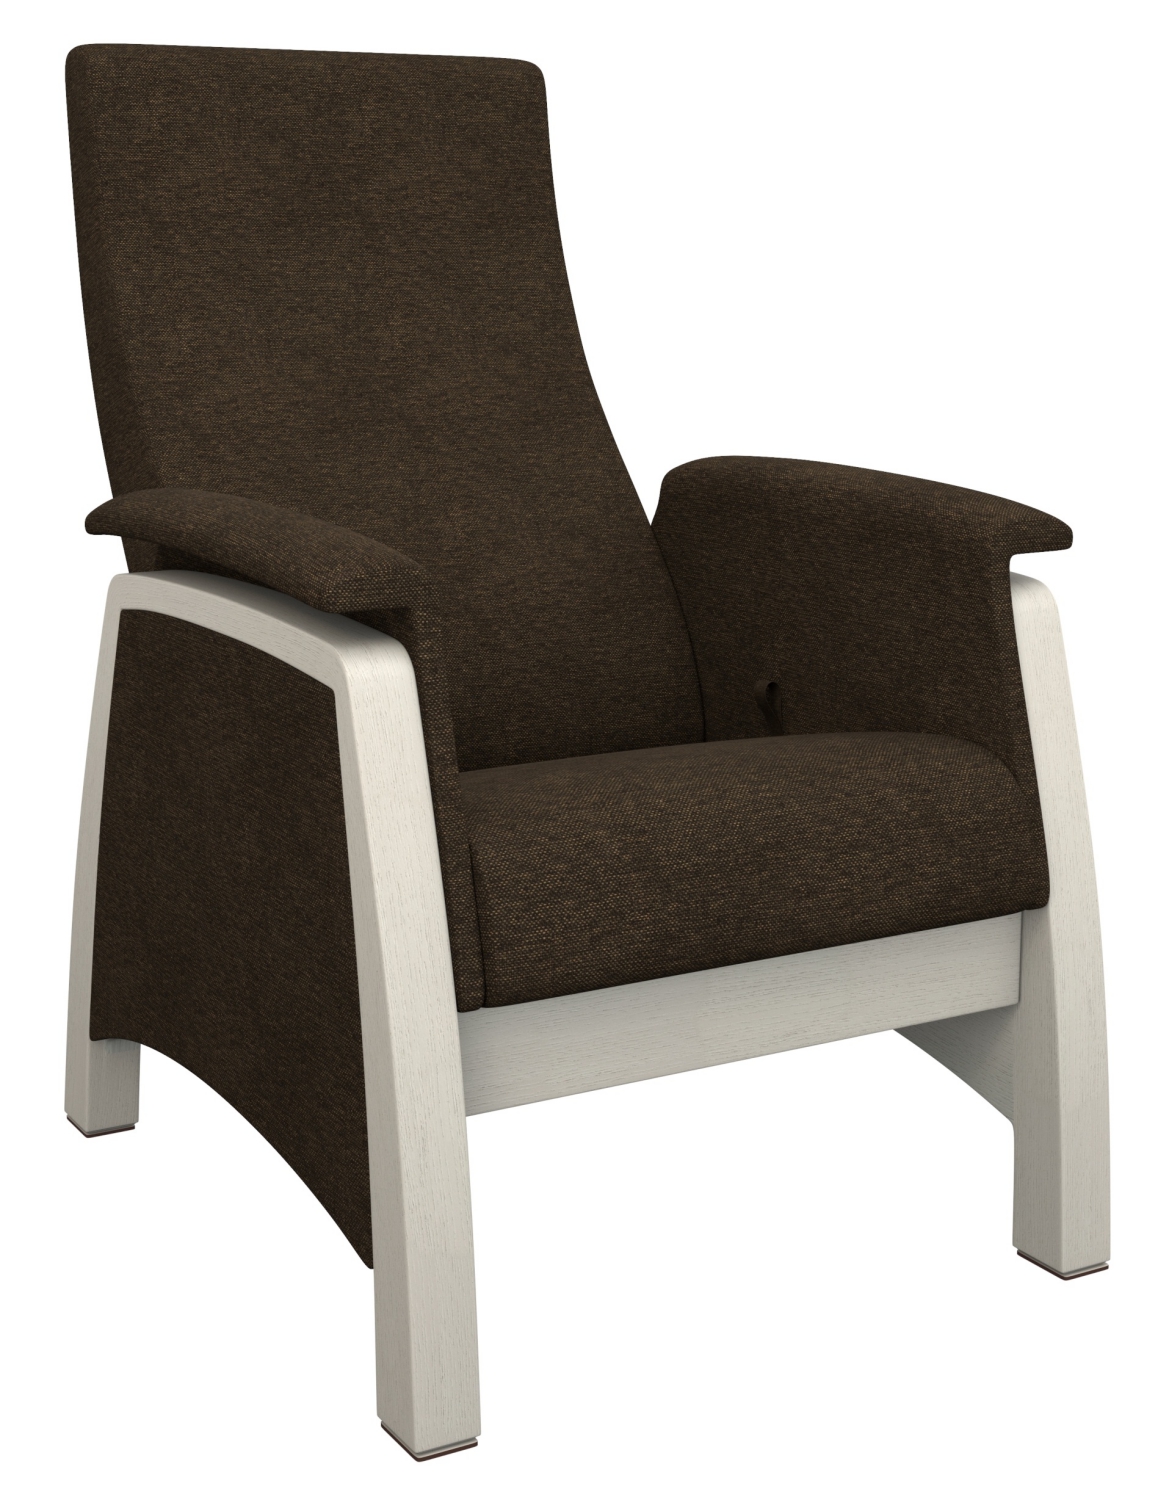 Кресло-качалка глайдер Balance-1 с откидной спинкой фото 1